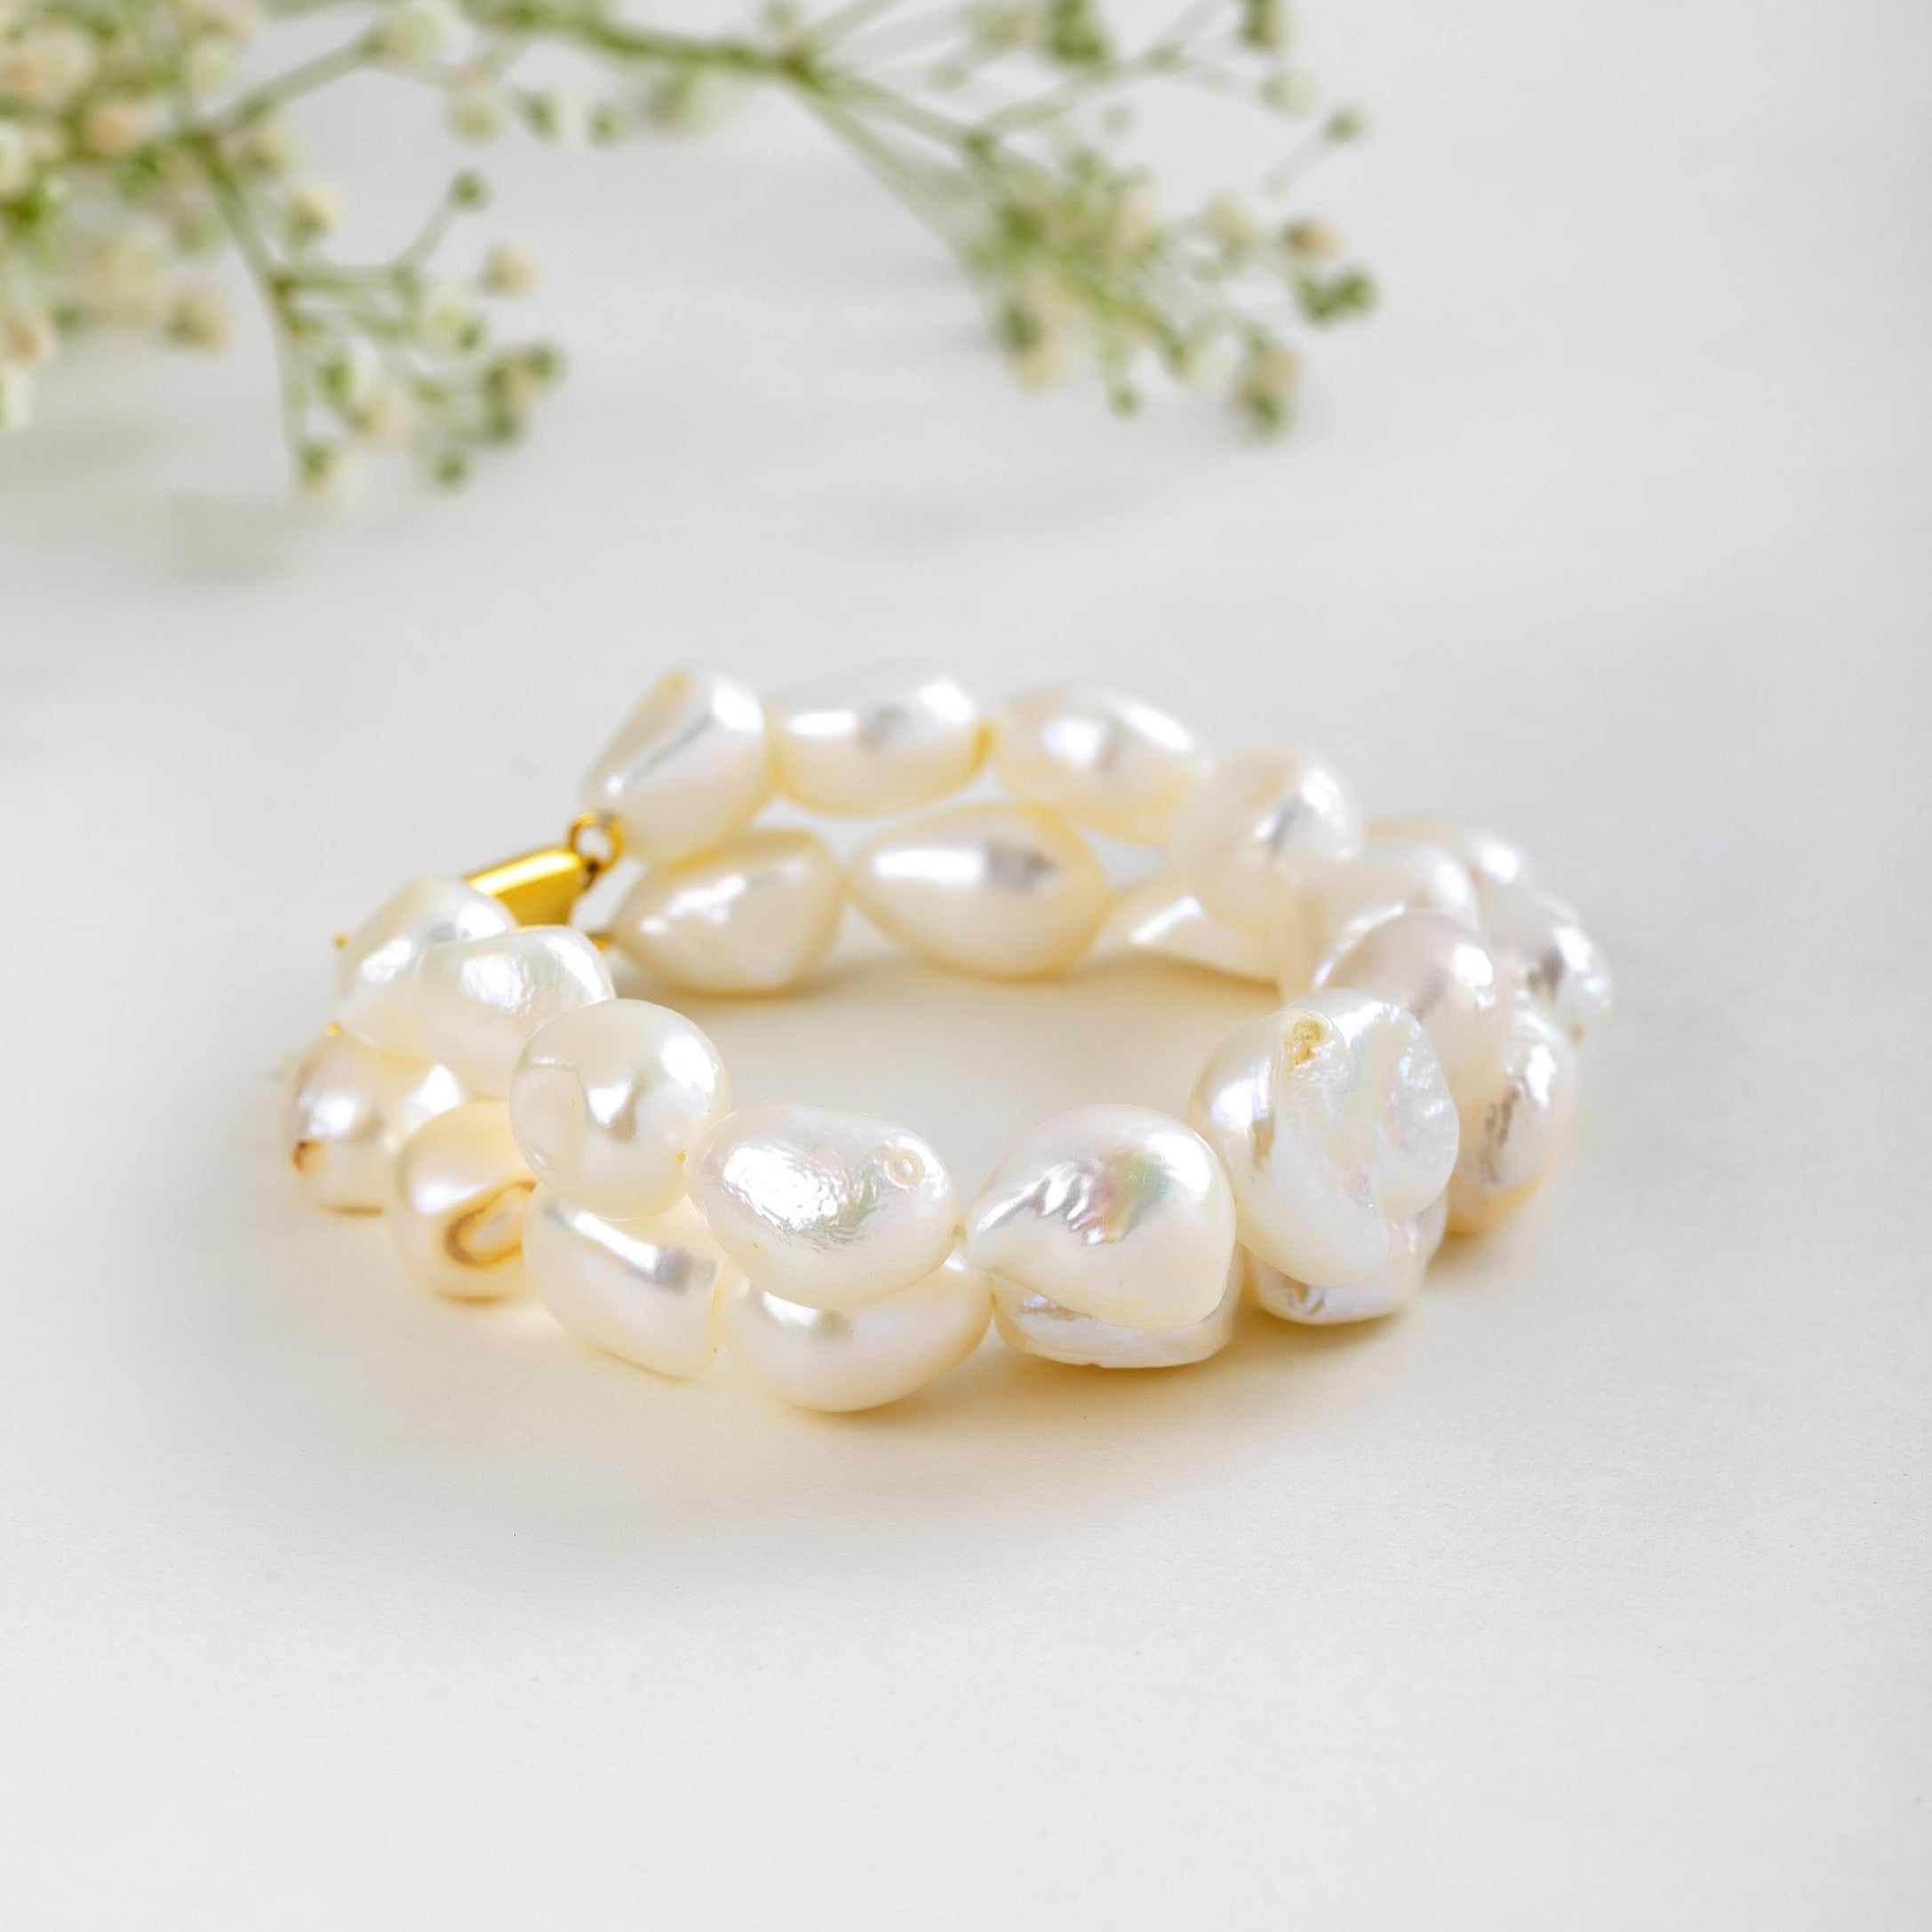 Snowy White Gemstone Bracelet